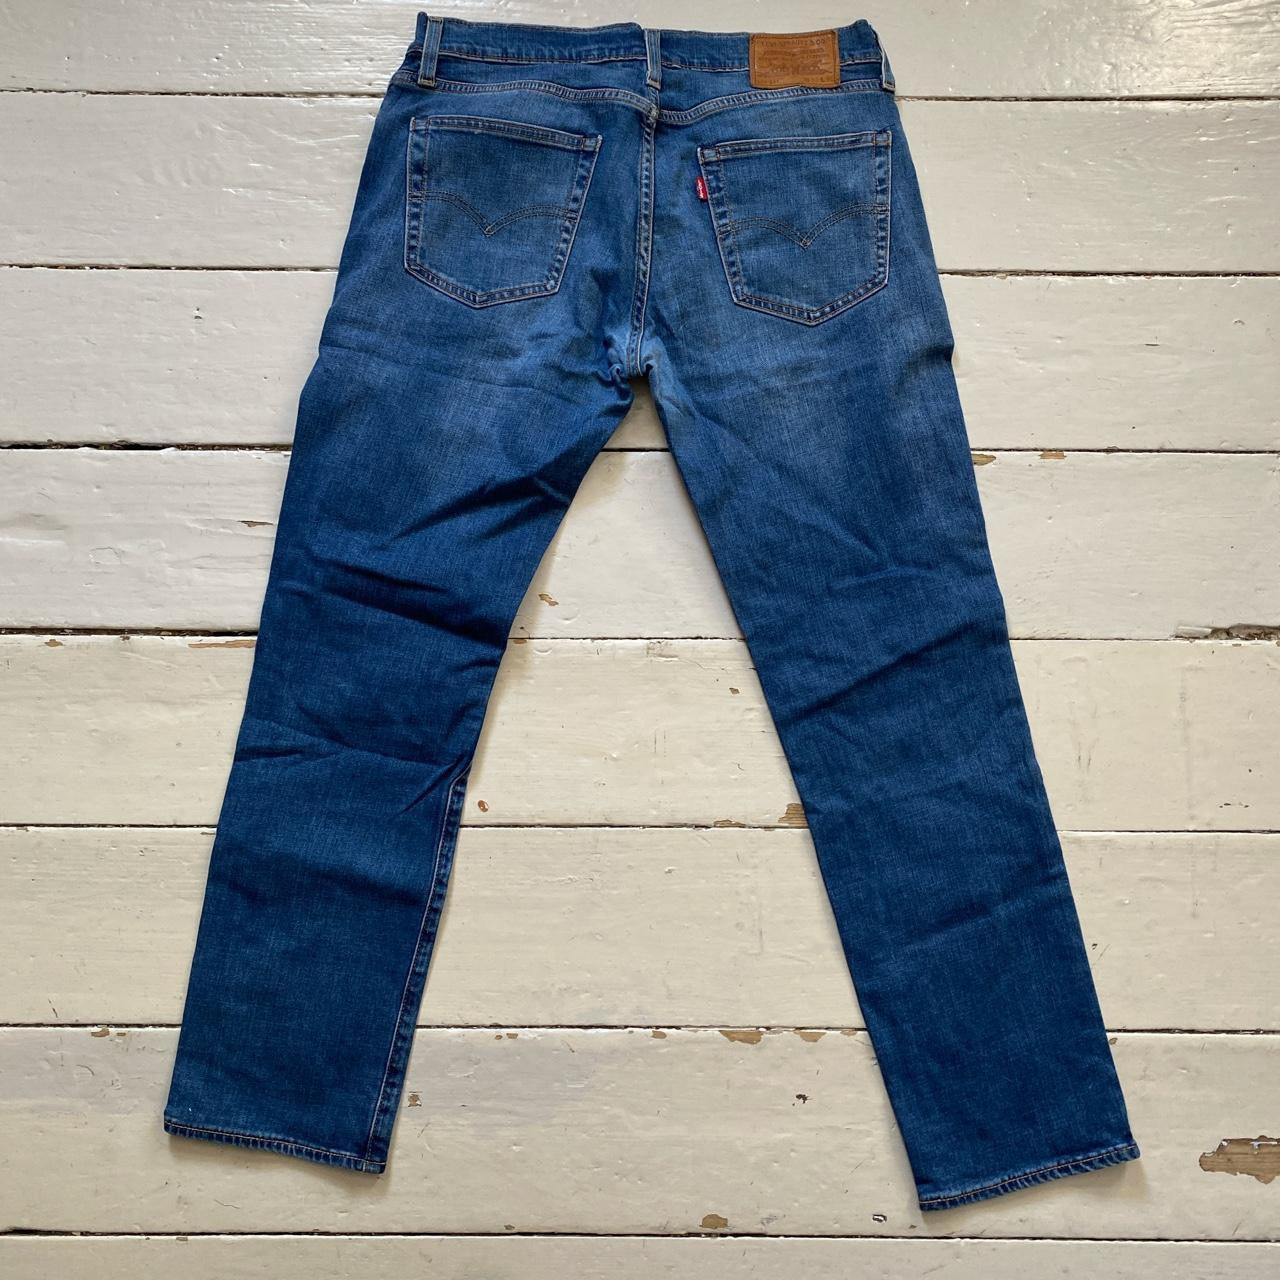 Levis 511 Light Blue Jeans (33/30)